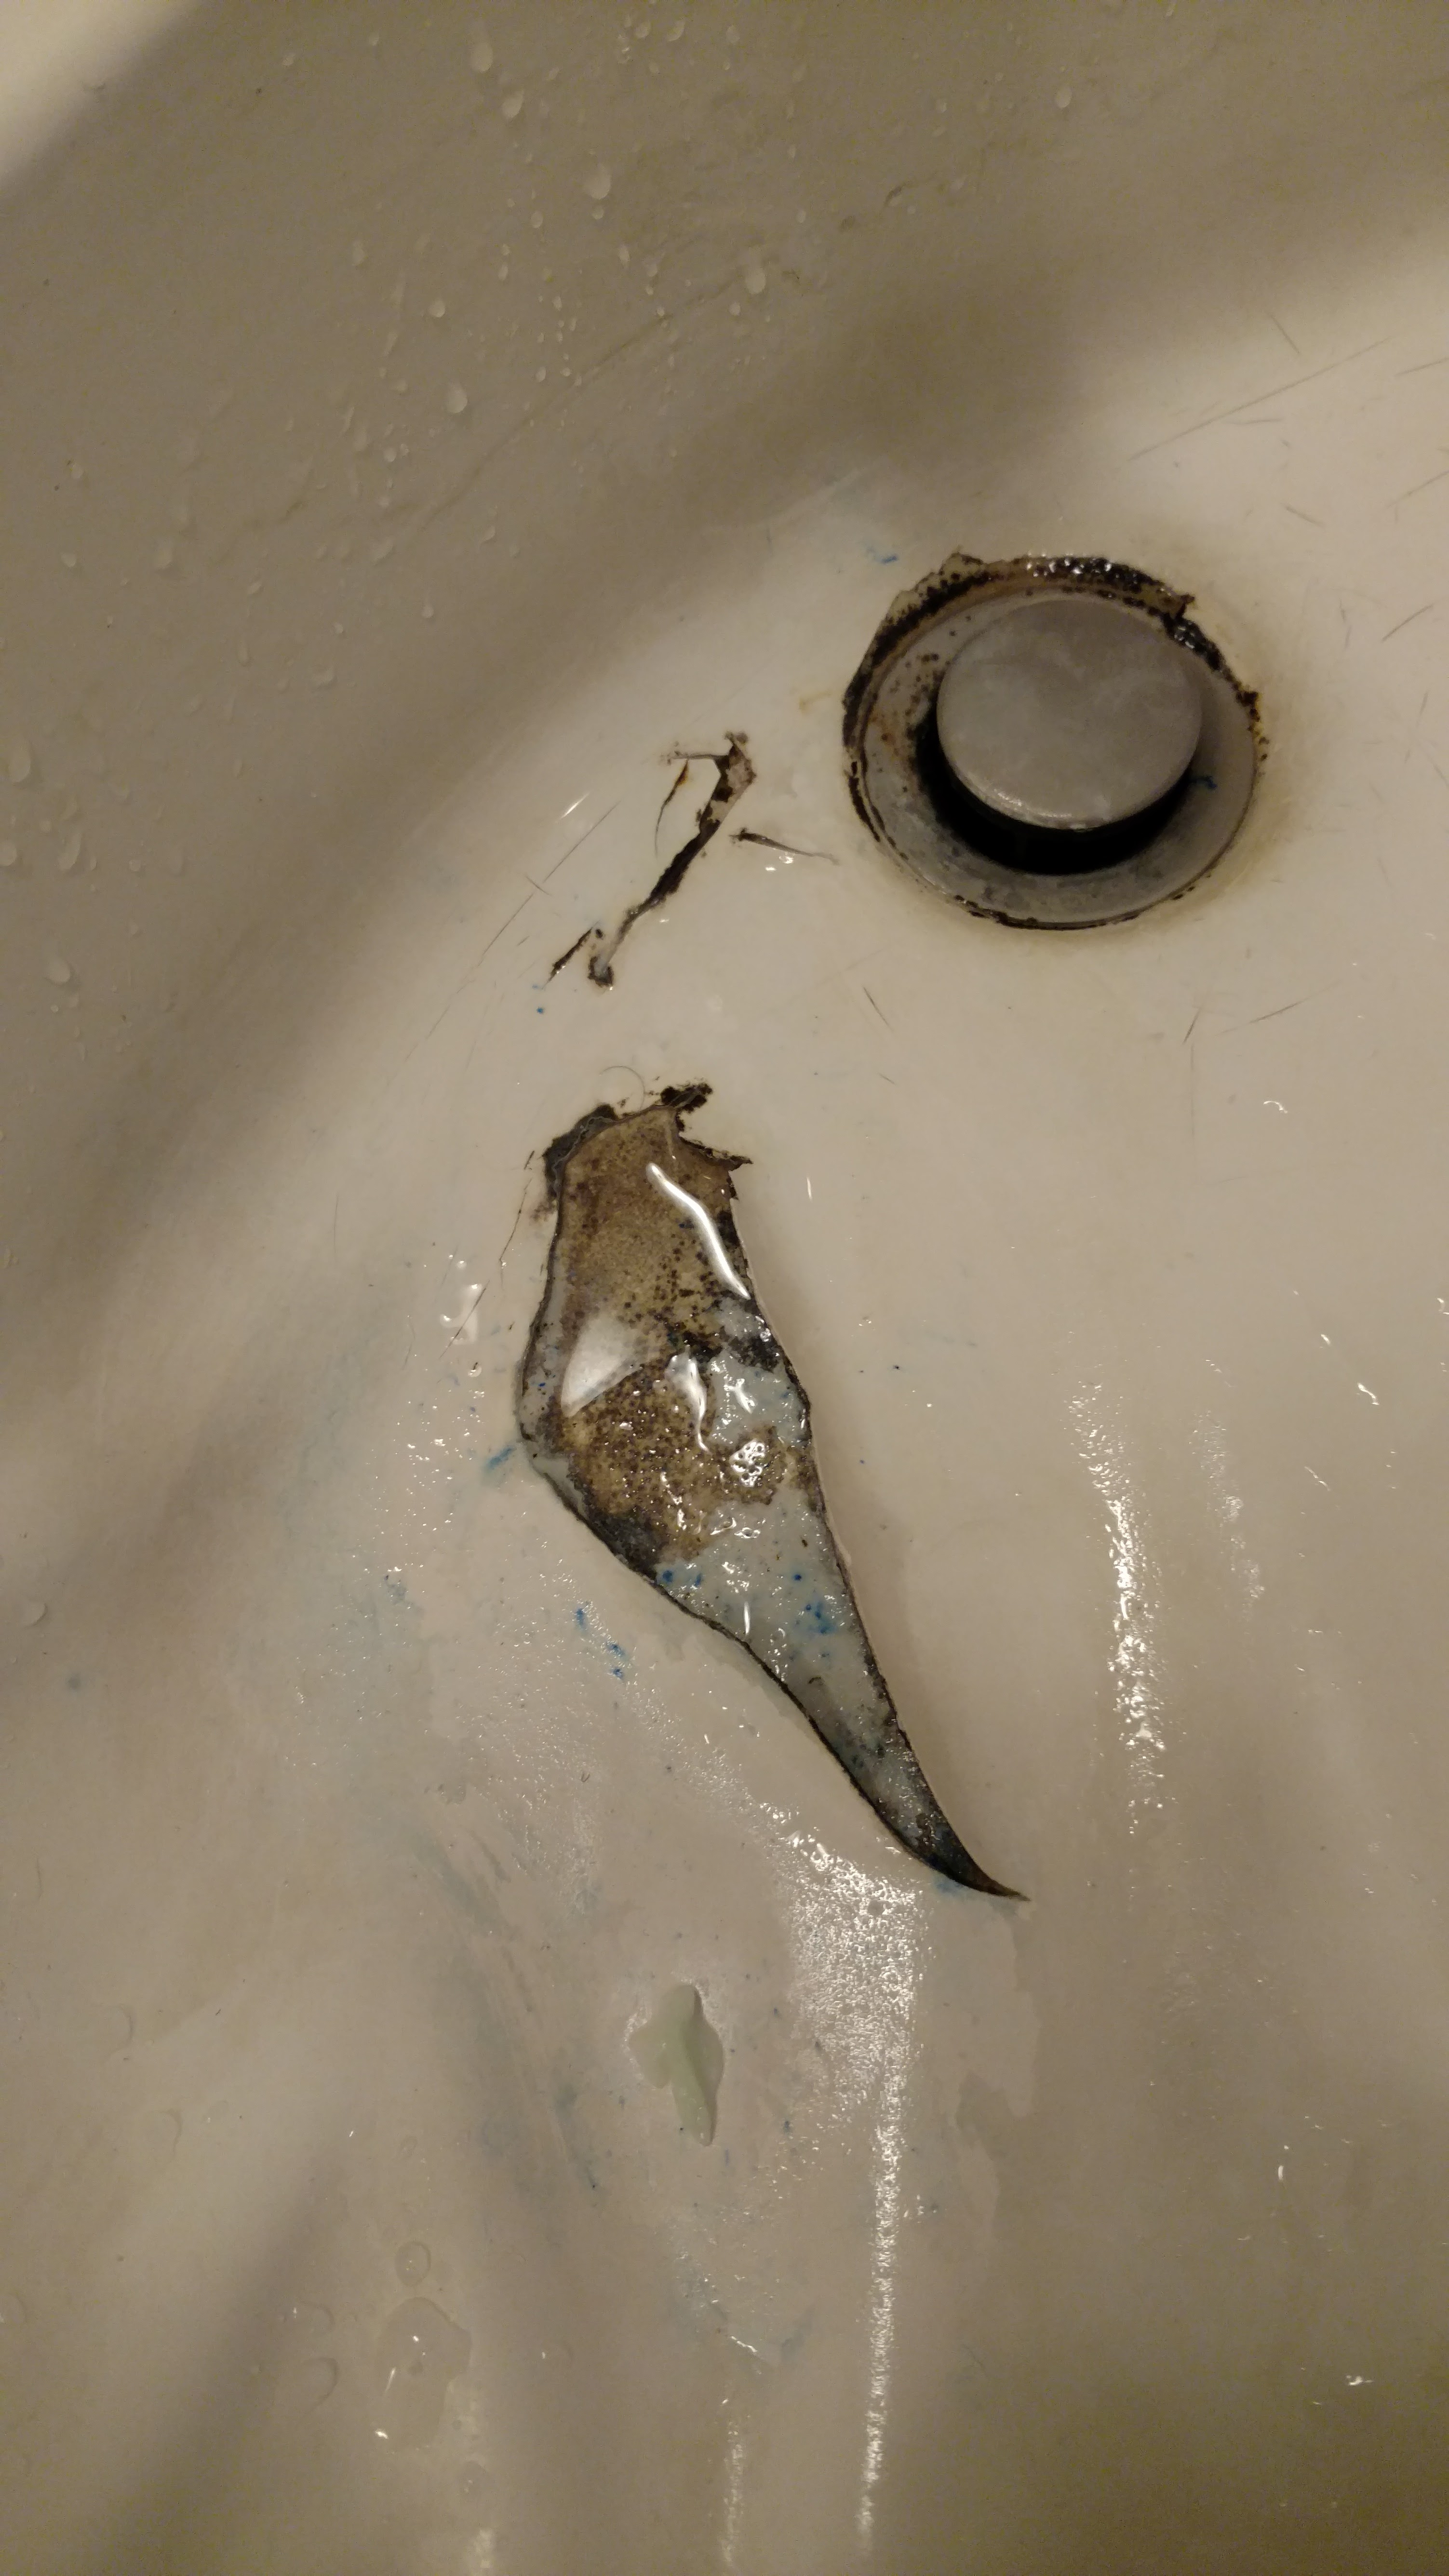 2016-12-11 Bathroom sink 1 of 3 Apt 9